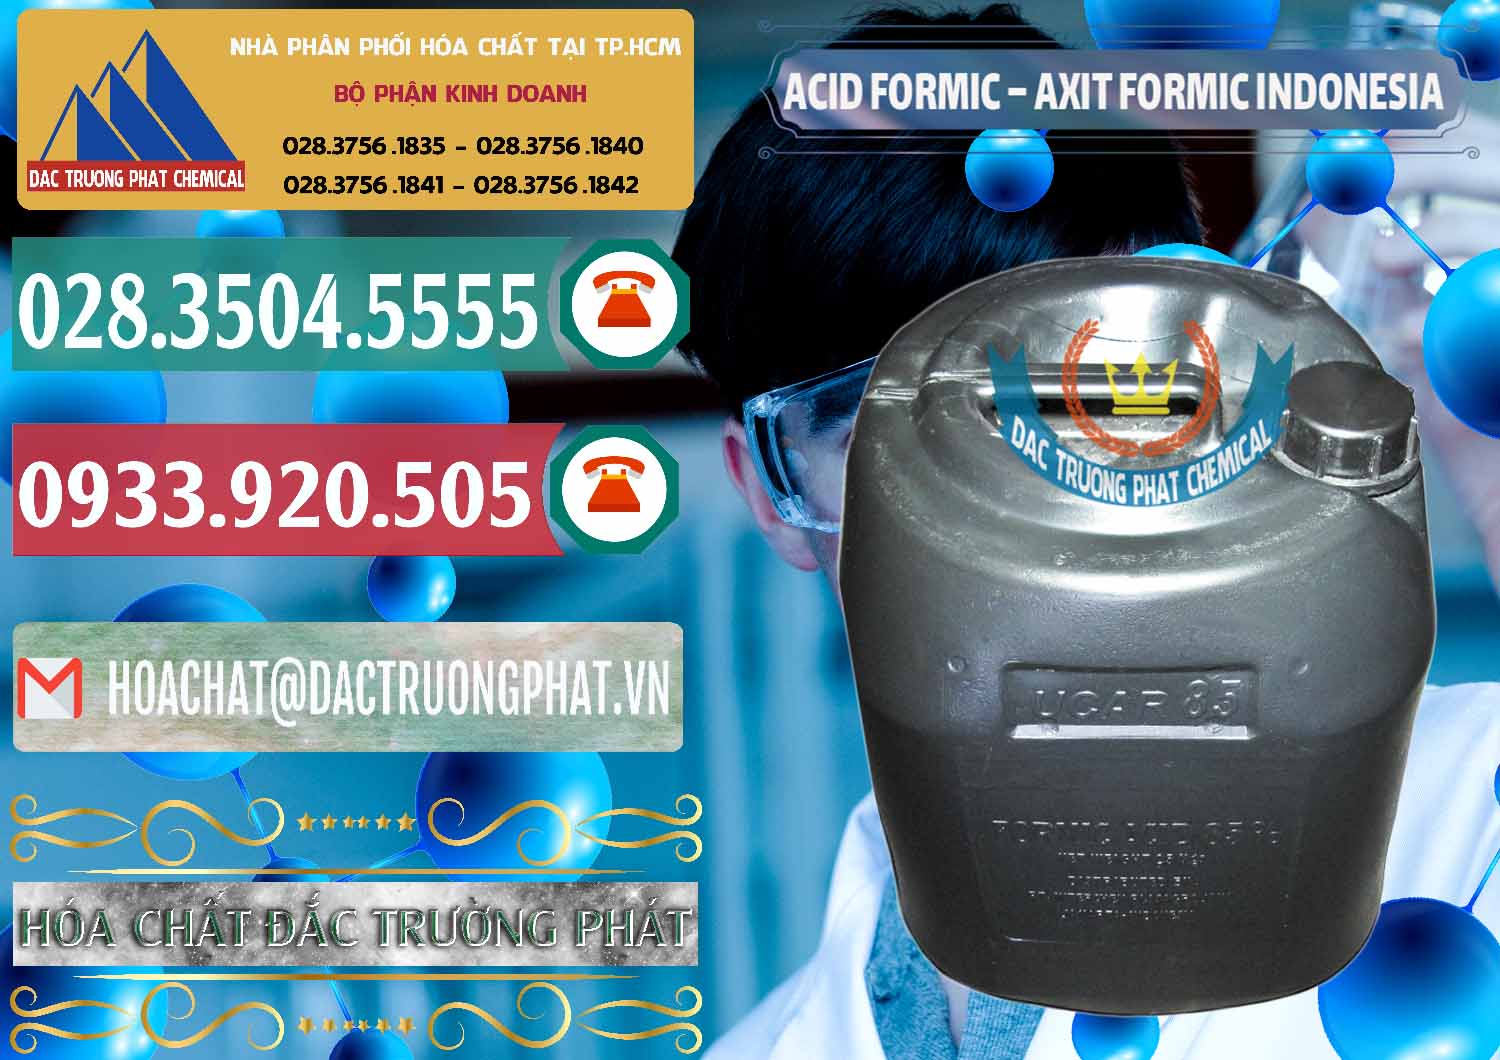 Nhà phân phối và bán Acid Formic - Axit Formic Indonesia - 0026 - Công ty kinh doanh _ phân phối hóa chất tại TP.HCM - muabanhoachat.vn